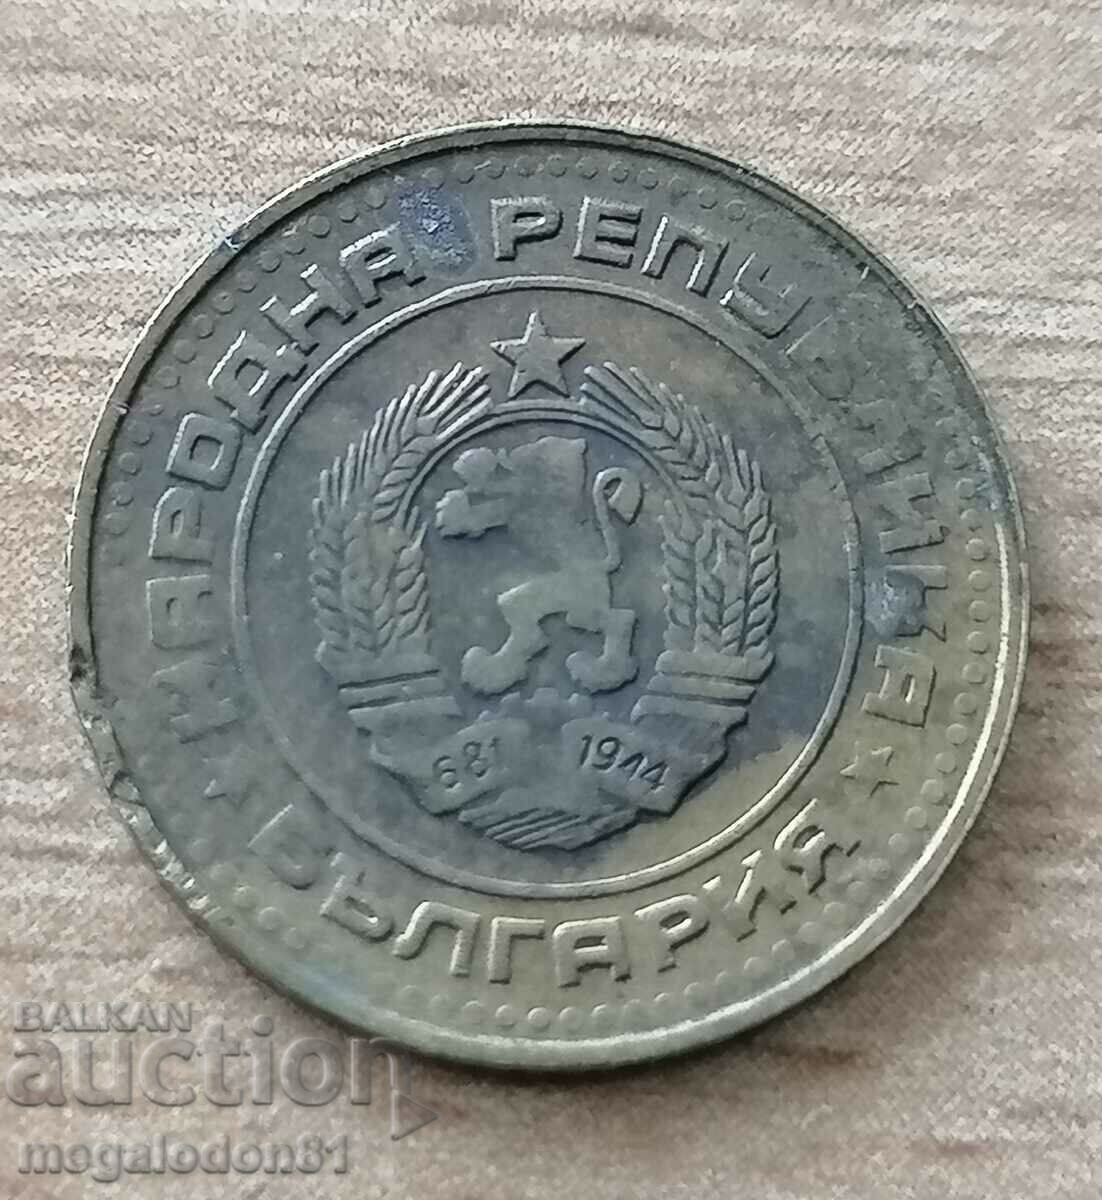 Bulgaria - 1 cent 1989, curiozitate